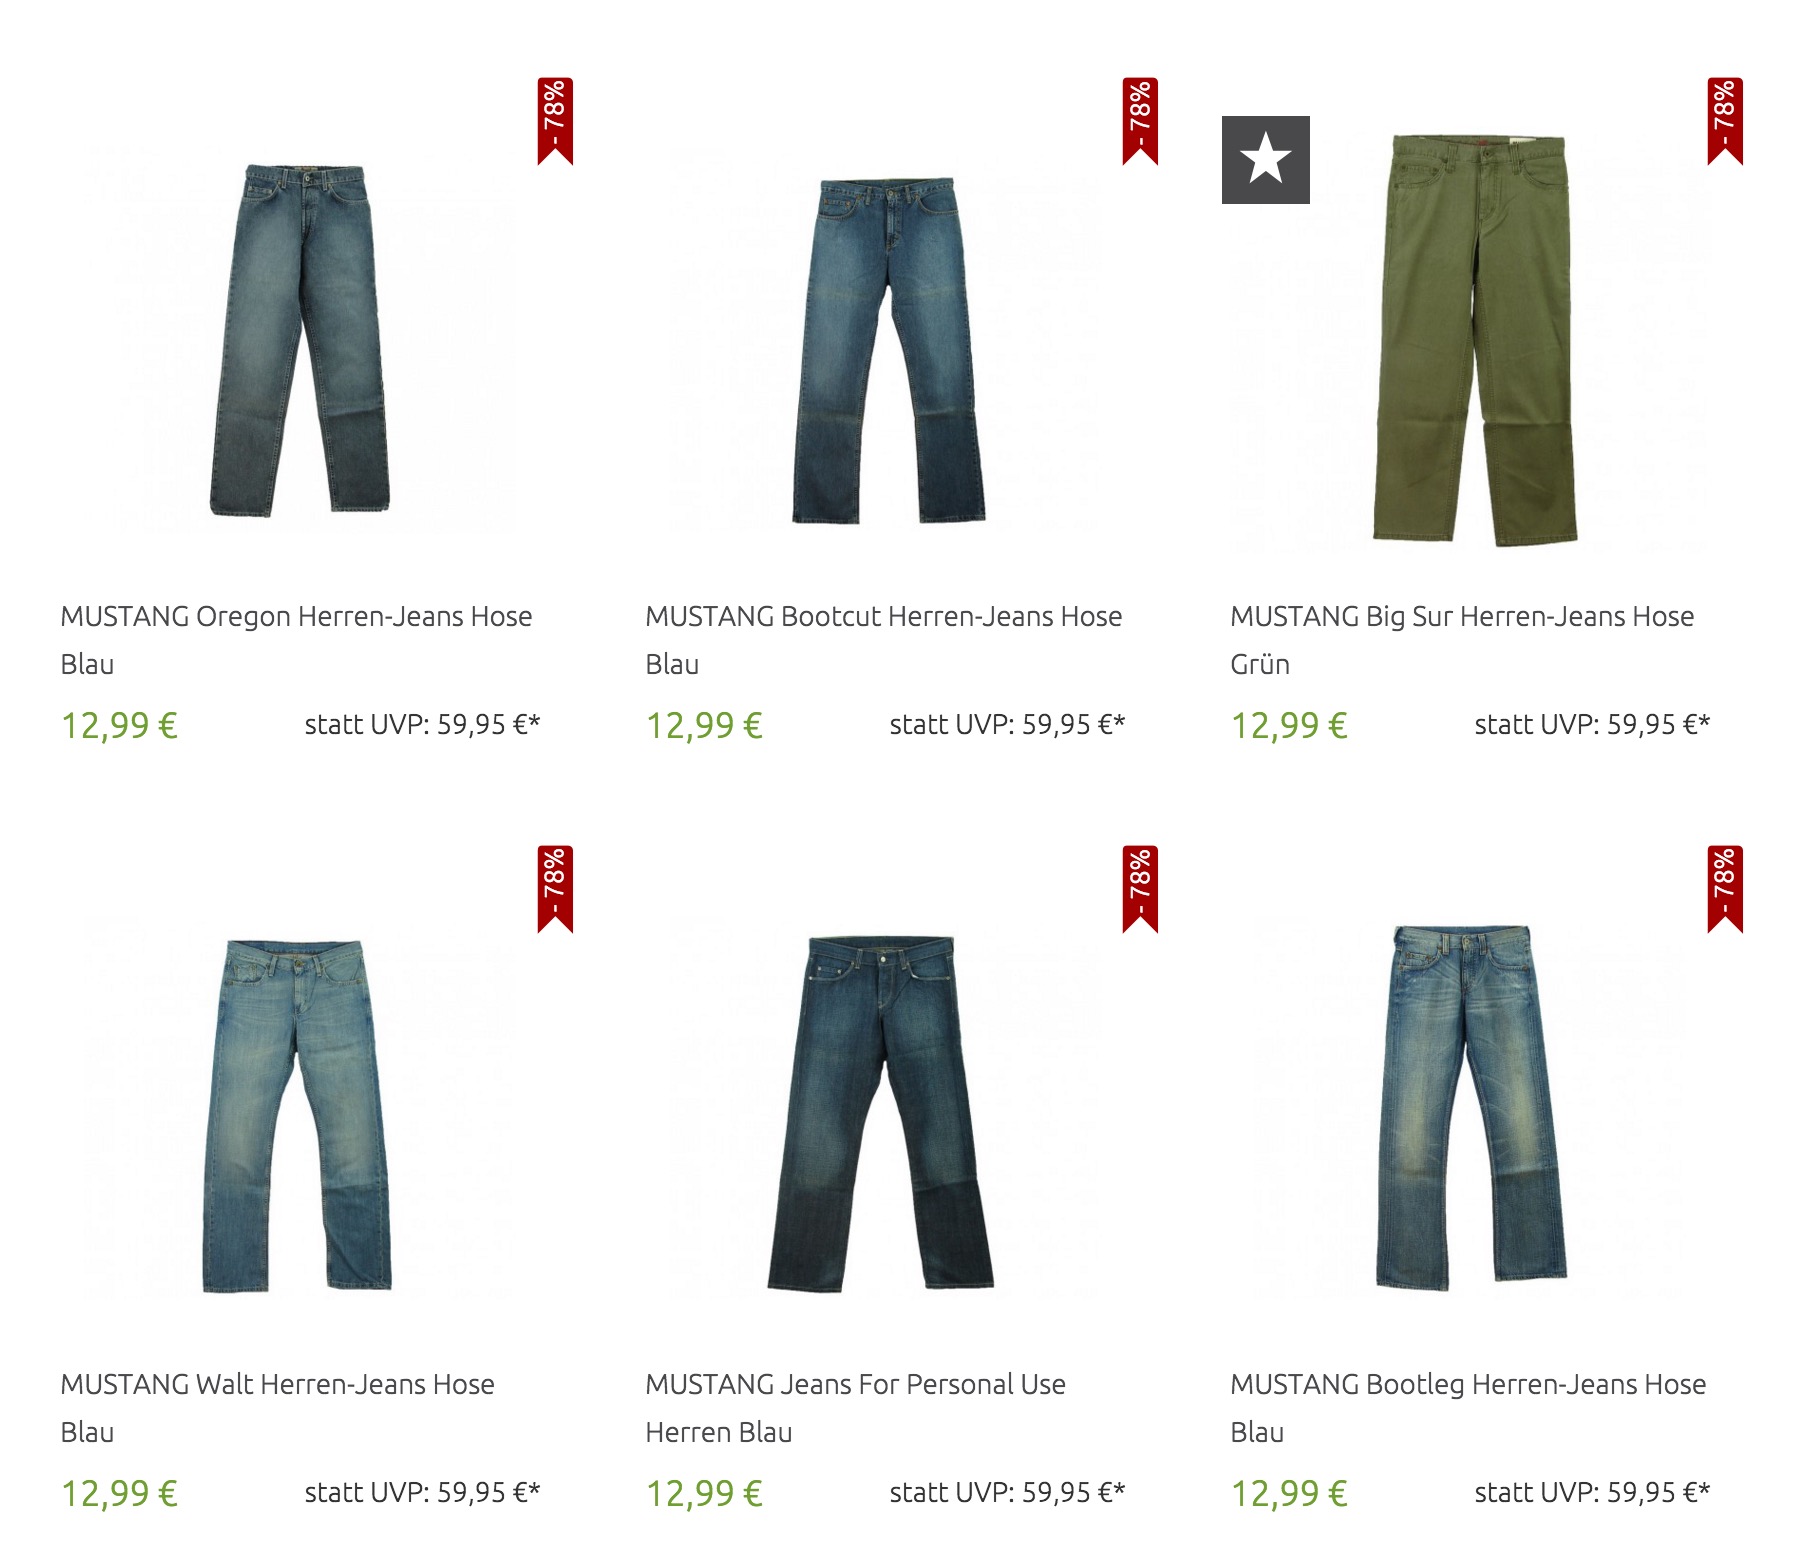 Viele verschiedene Mustang Jeans für nur 12,99 Euro inkl. Versand bei Outlet46.de!